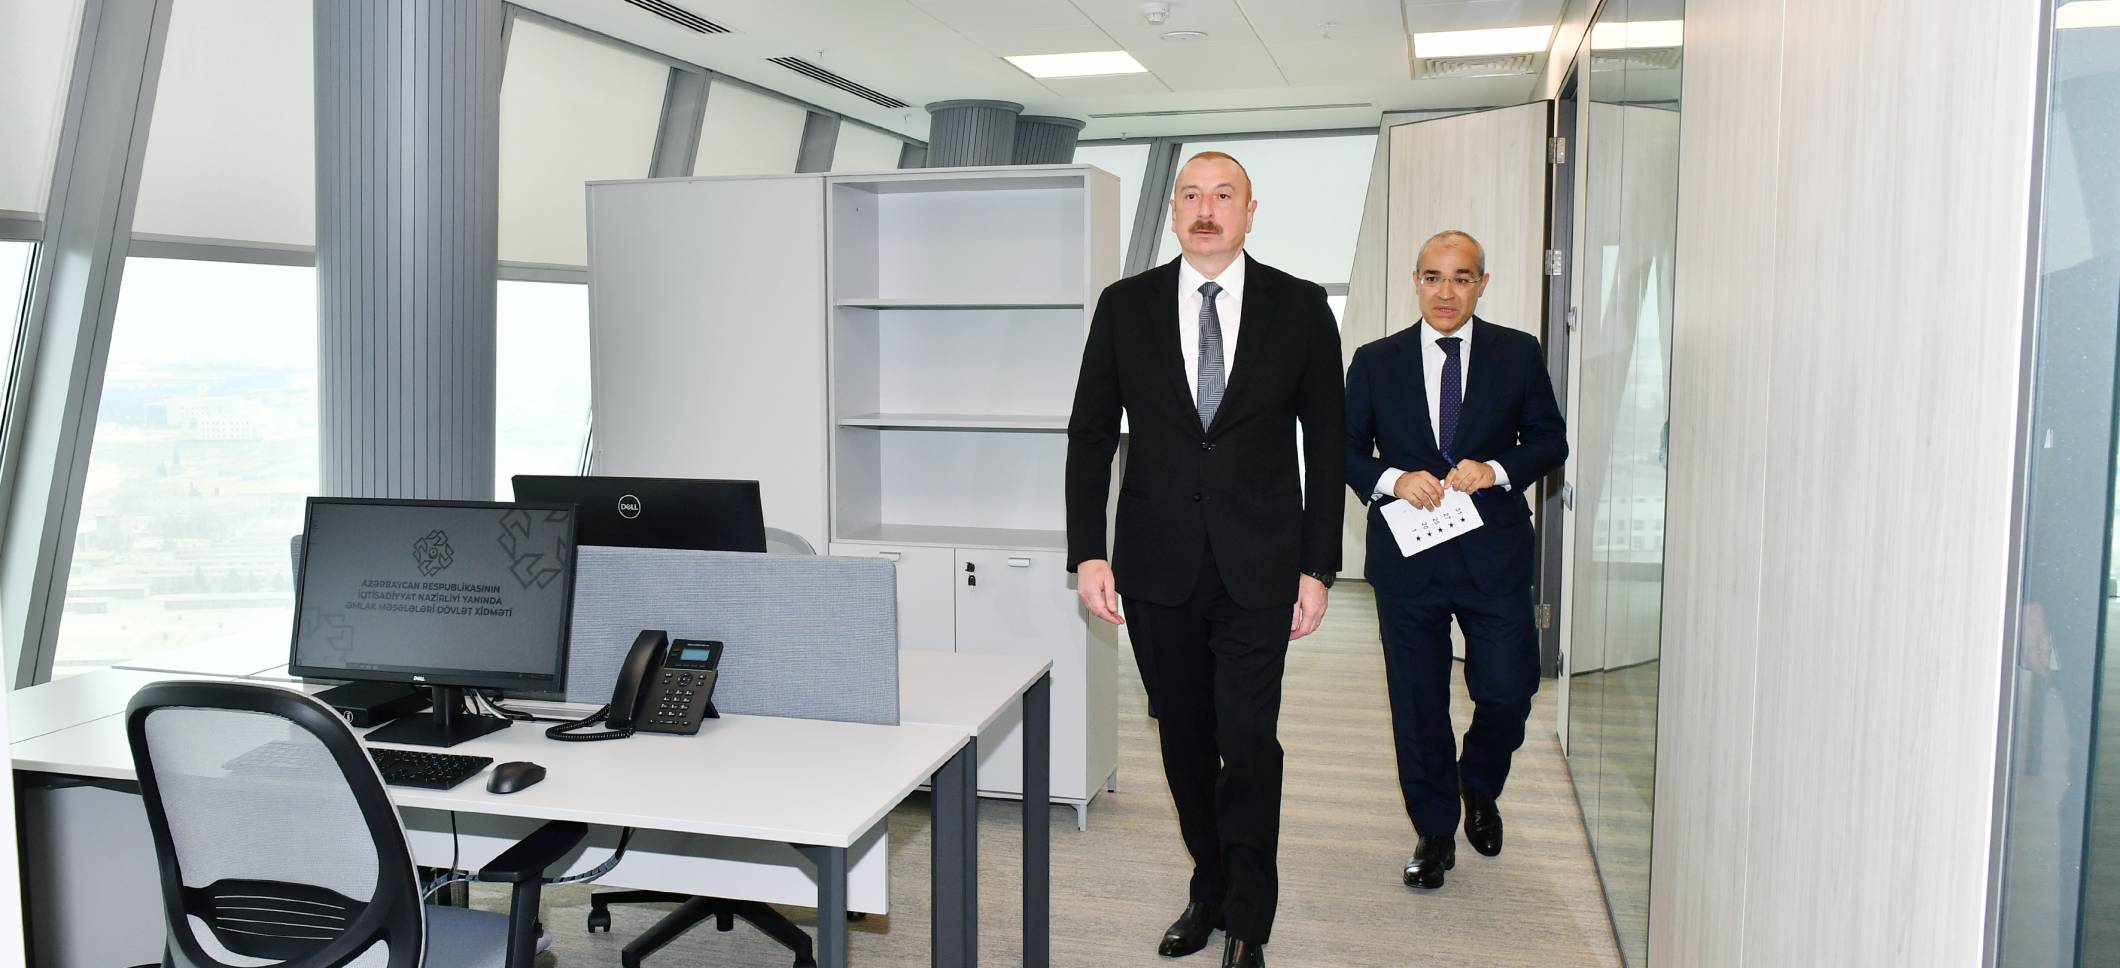 İlham Əliyev Əmlak Məsələləri Dövlət Xidmətinin yeni inzibati binasının açılışında iştirak edib